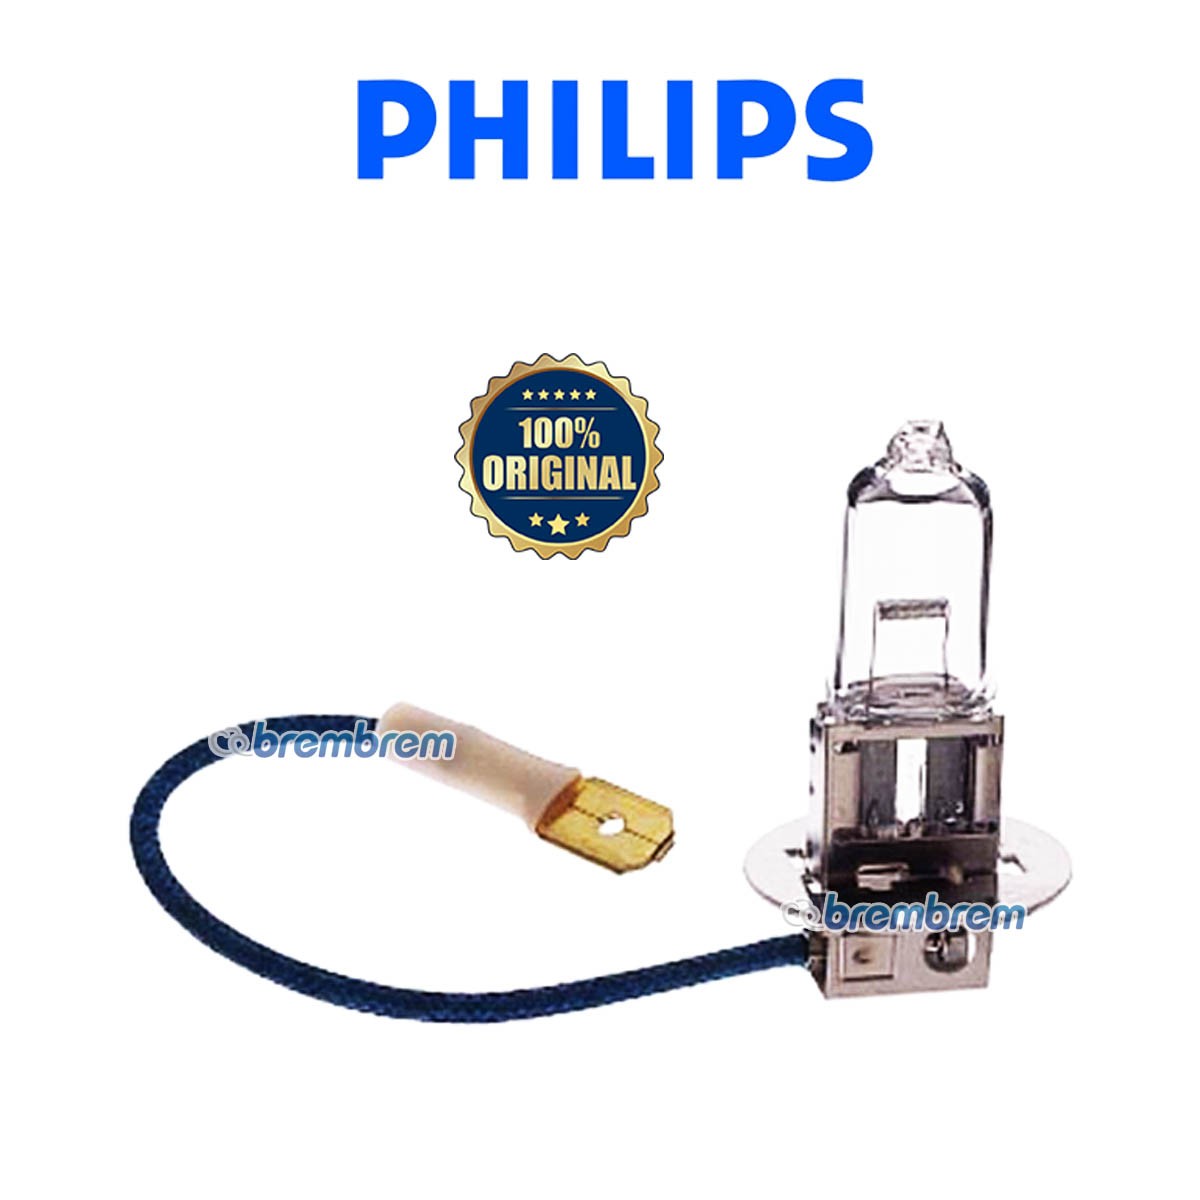 PHILIPS PREMIUM VISION H3 - LAMPU HALOGEN